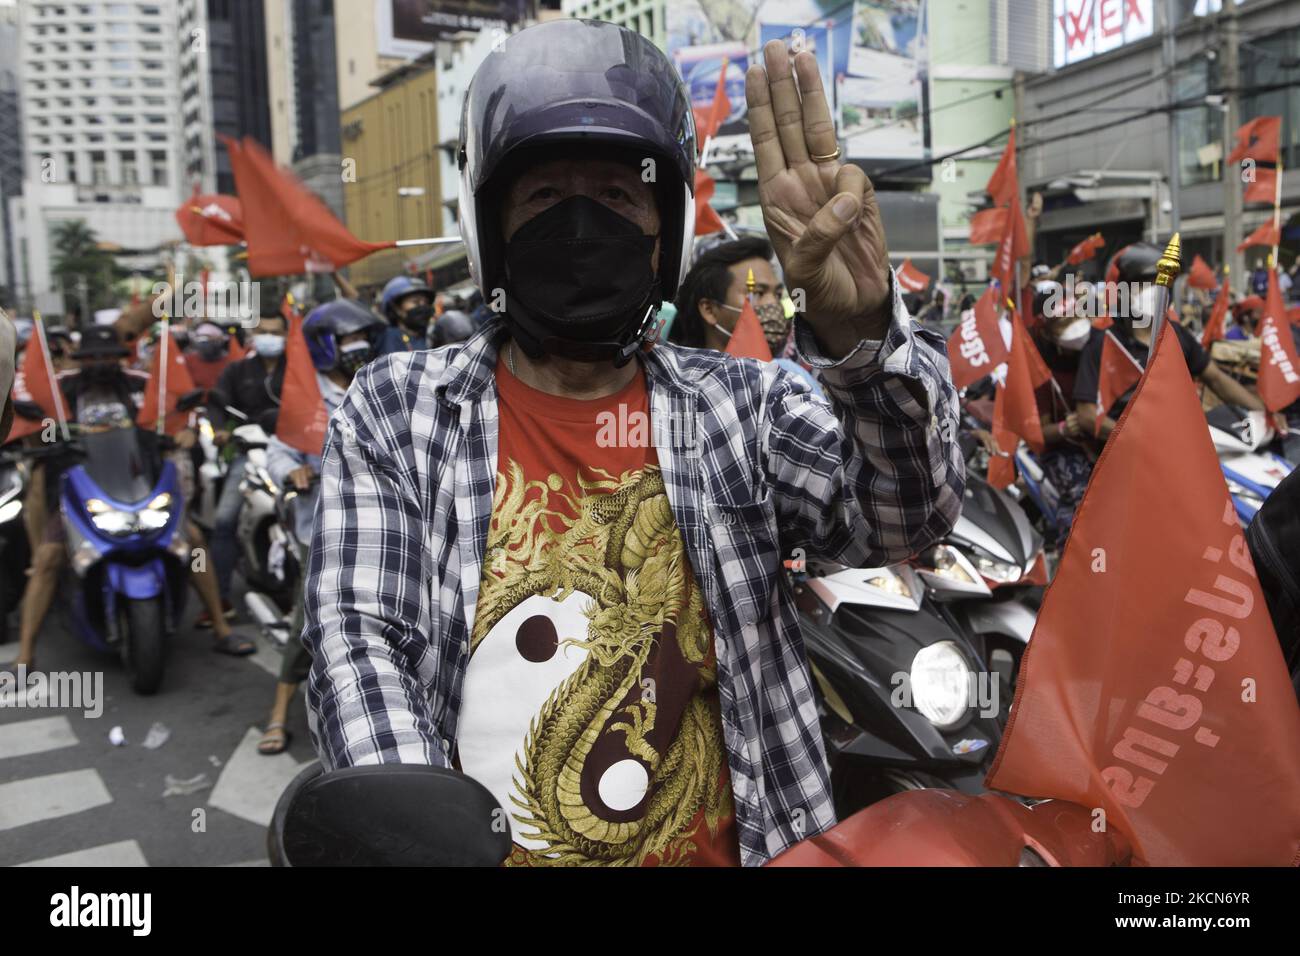 Demonstranten, die mit Motorrädern unterwegs waren, hielten das drei-Finger-Symbol hoch, bevor sie am Sonntag eine Anti-Putsch- und Anti-Regierungskundgebung an der Kreuzung Asoke abriefen. Regierungsfeindliche Demonstranten in Bangkok, Thailand, am 19. September 2021, während einer Demonstration anlässlich des 15-jährigen Jubiläums seit der militärischen Übernahme von 2006 in Bangkok am 19. September 2021, als sie den Rücktritt der aktuellen Regierung wegen ihres Umgangs mit der Coronavirus-Krise von Covid-19 forderten. (Foto von Atiwat Silpamethanont/NurPhoto) Stockfoto